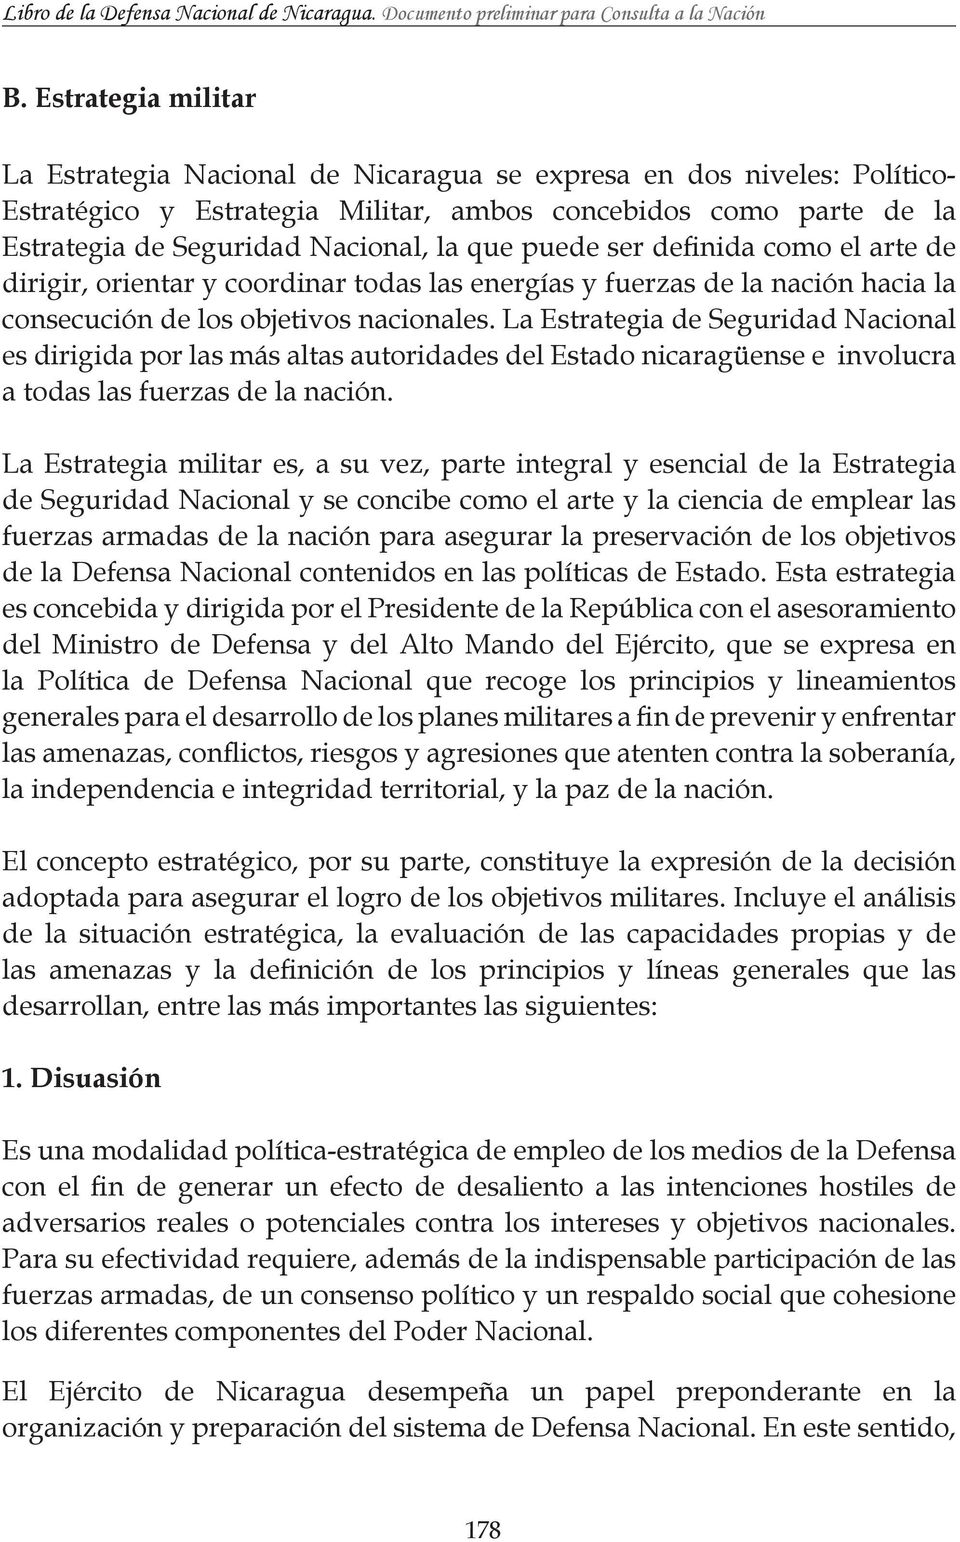 La Estrategia de Seguridad Nacional es dirigida por las más altas autoridades del Estado nicaragüense e involucra a todas las fuerzas de la nación.